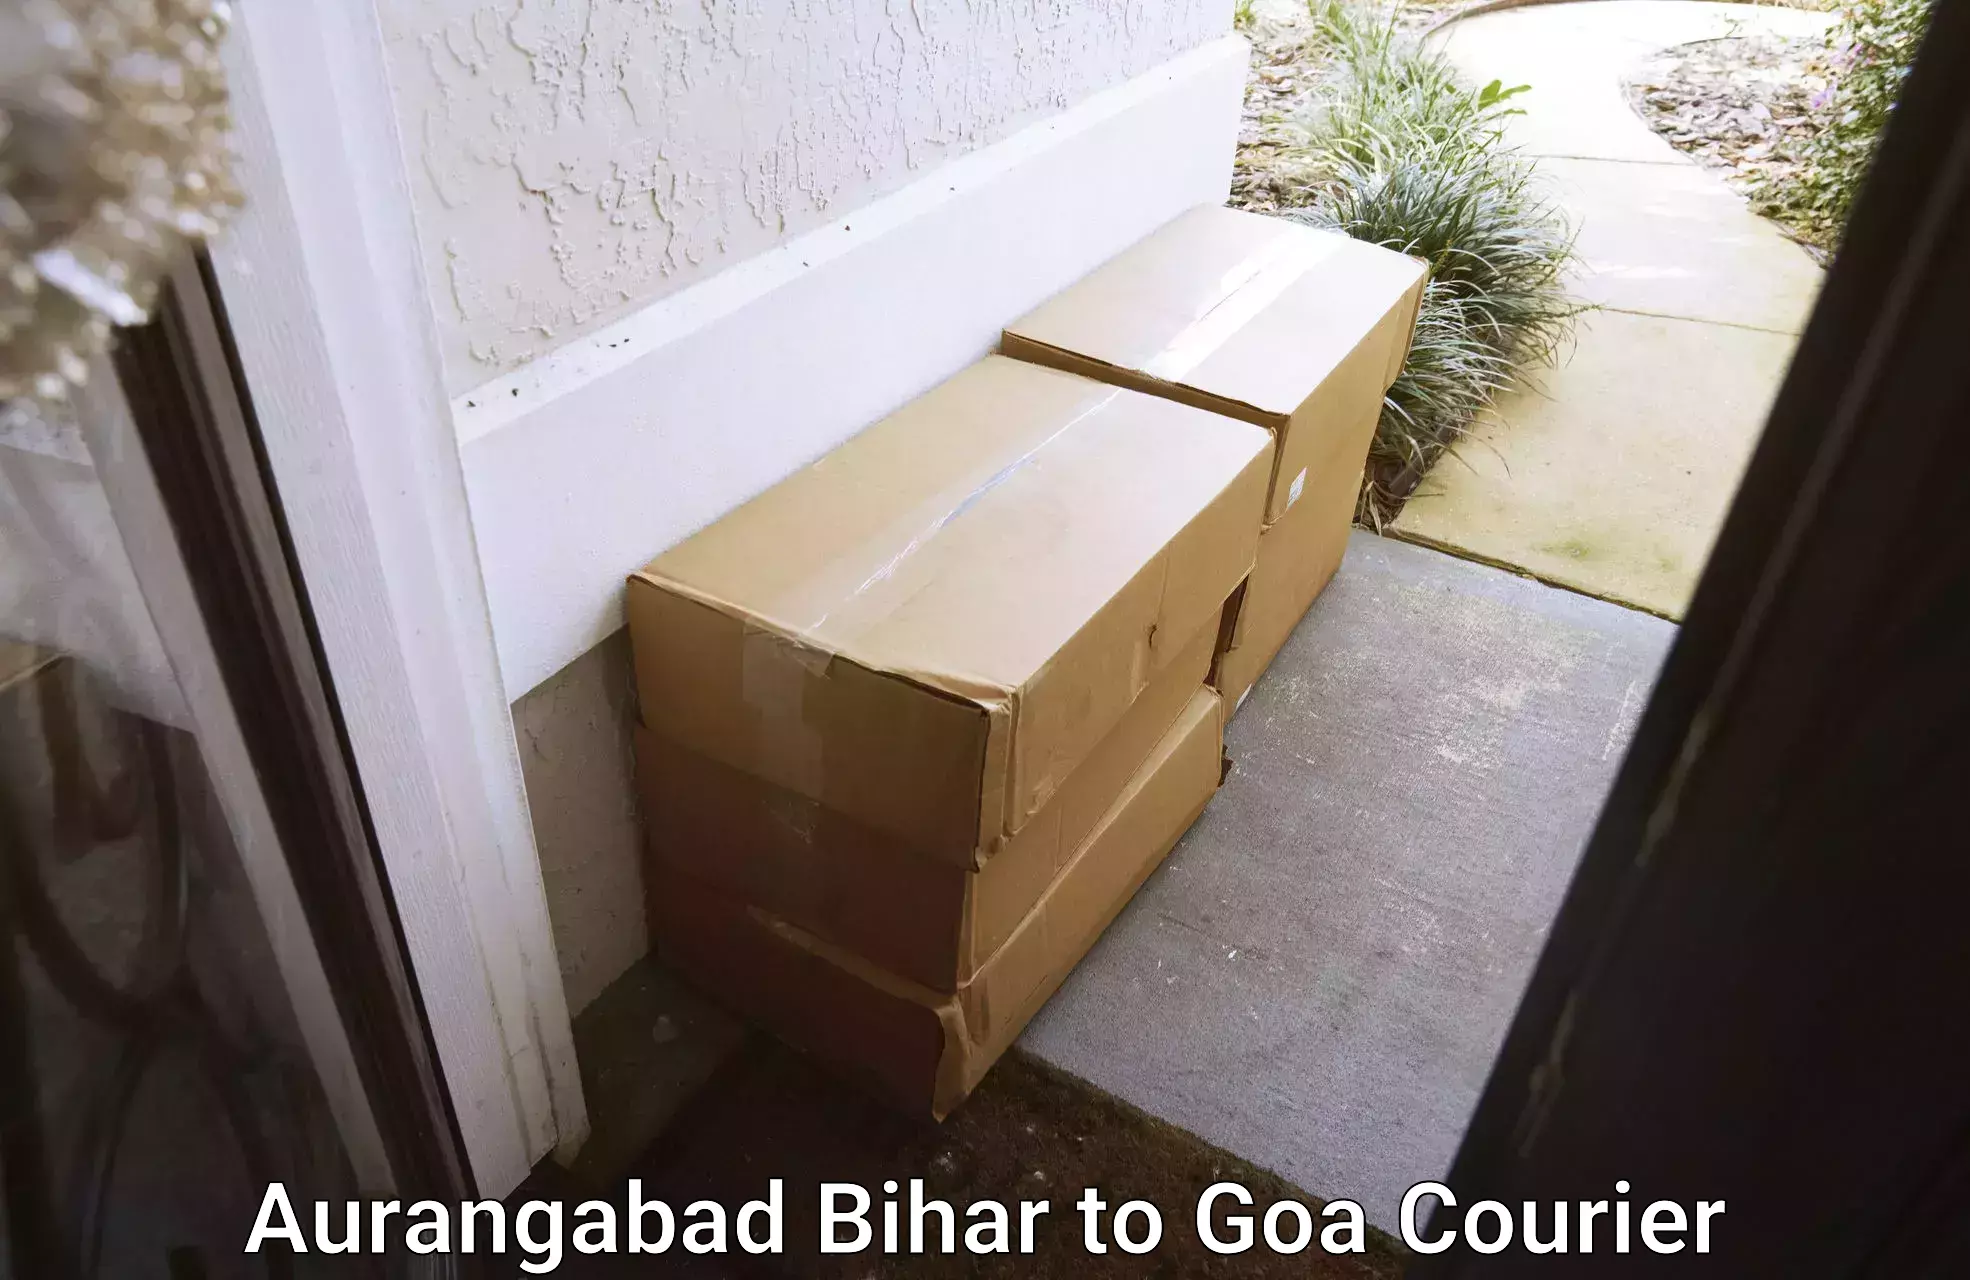 Full home moving services Aurangabad Bihar to Vasco da Gama